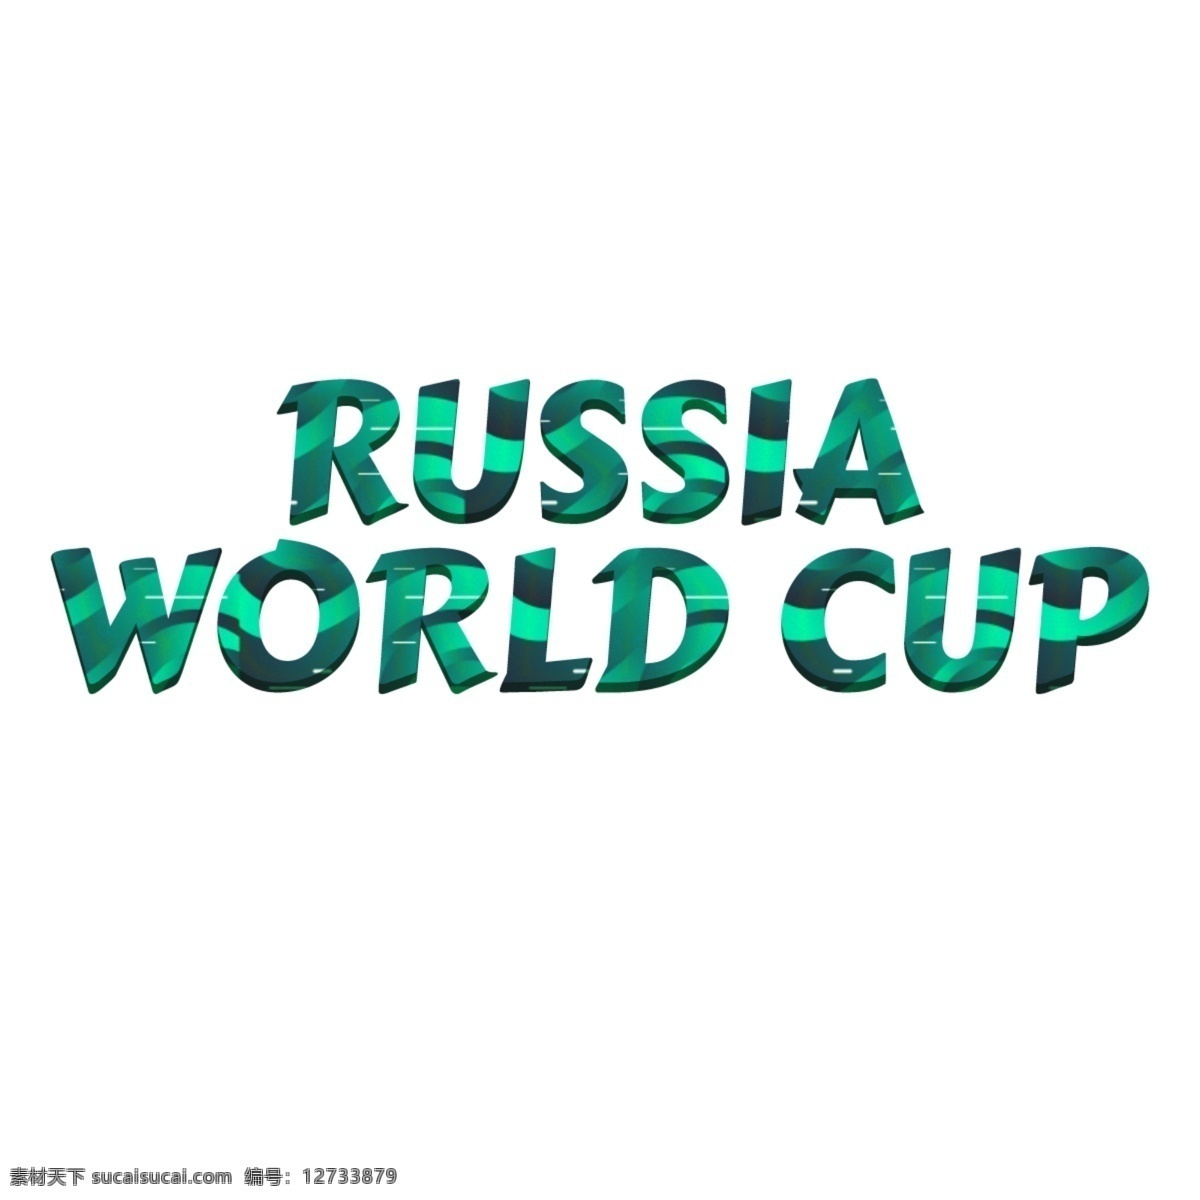 多彩 俄罗斯 世界杯 字体 俄罗斯世界杯 足球 绿色 背景 抽象字体 书法